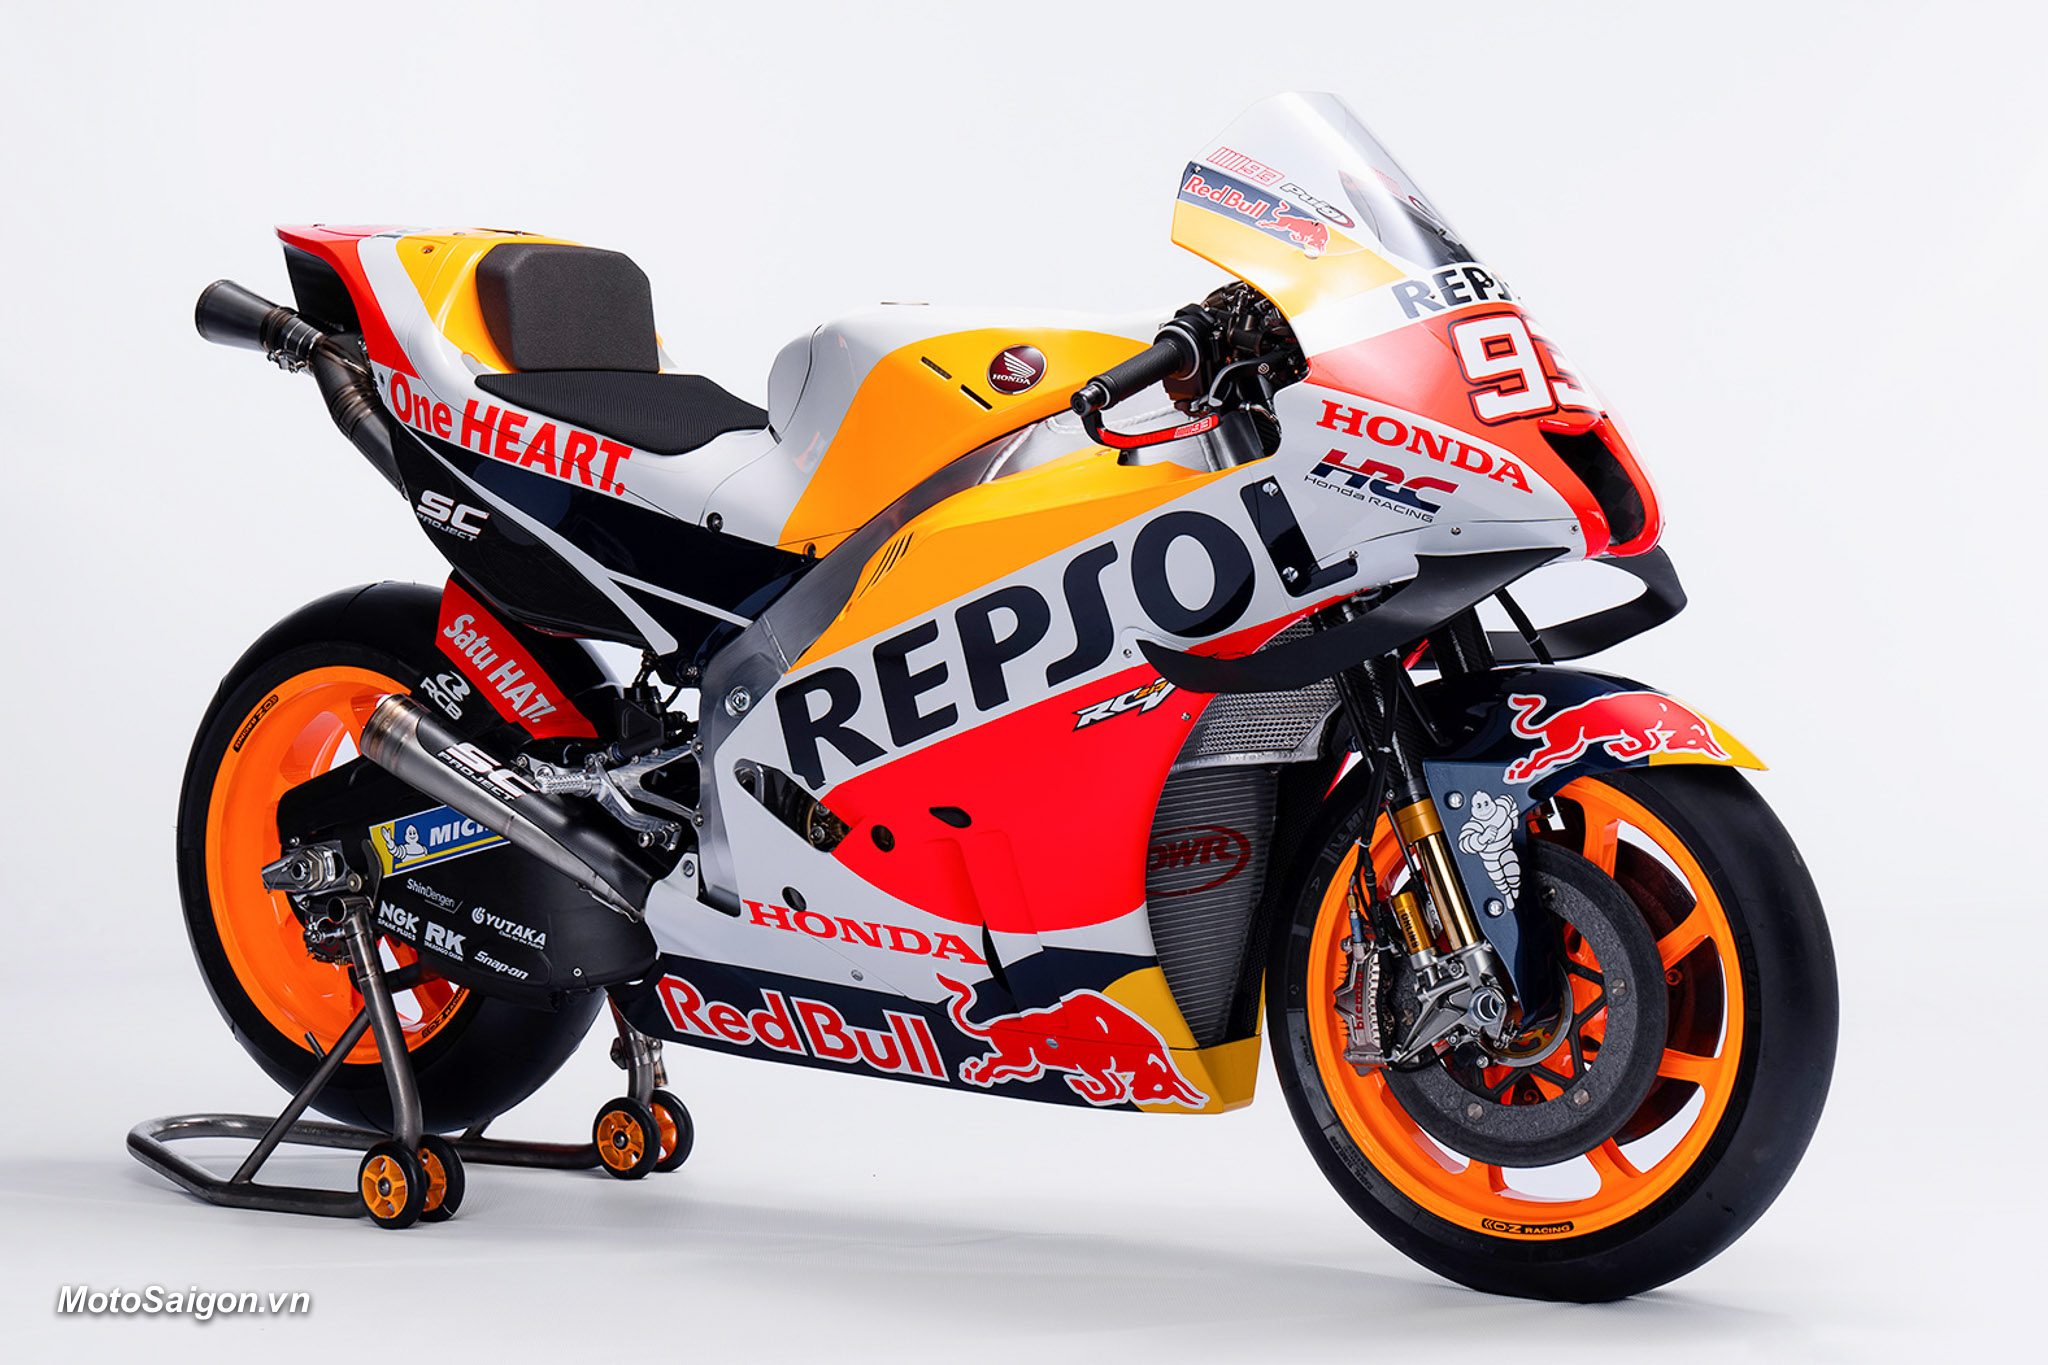 Honda LCR ra mắt mẫu xe đua và đội hình cho mùa giải MotoGP 2020  2banhvn